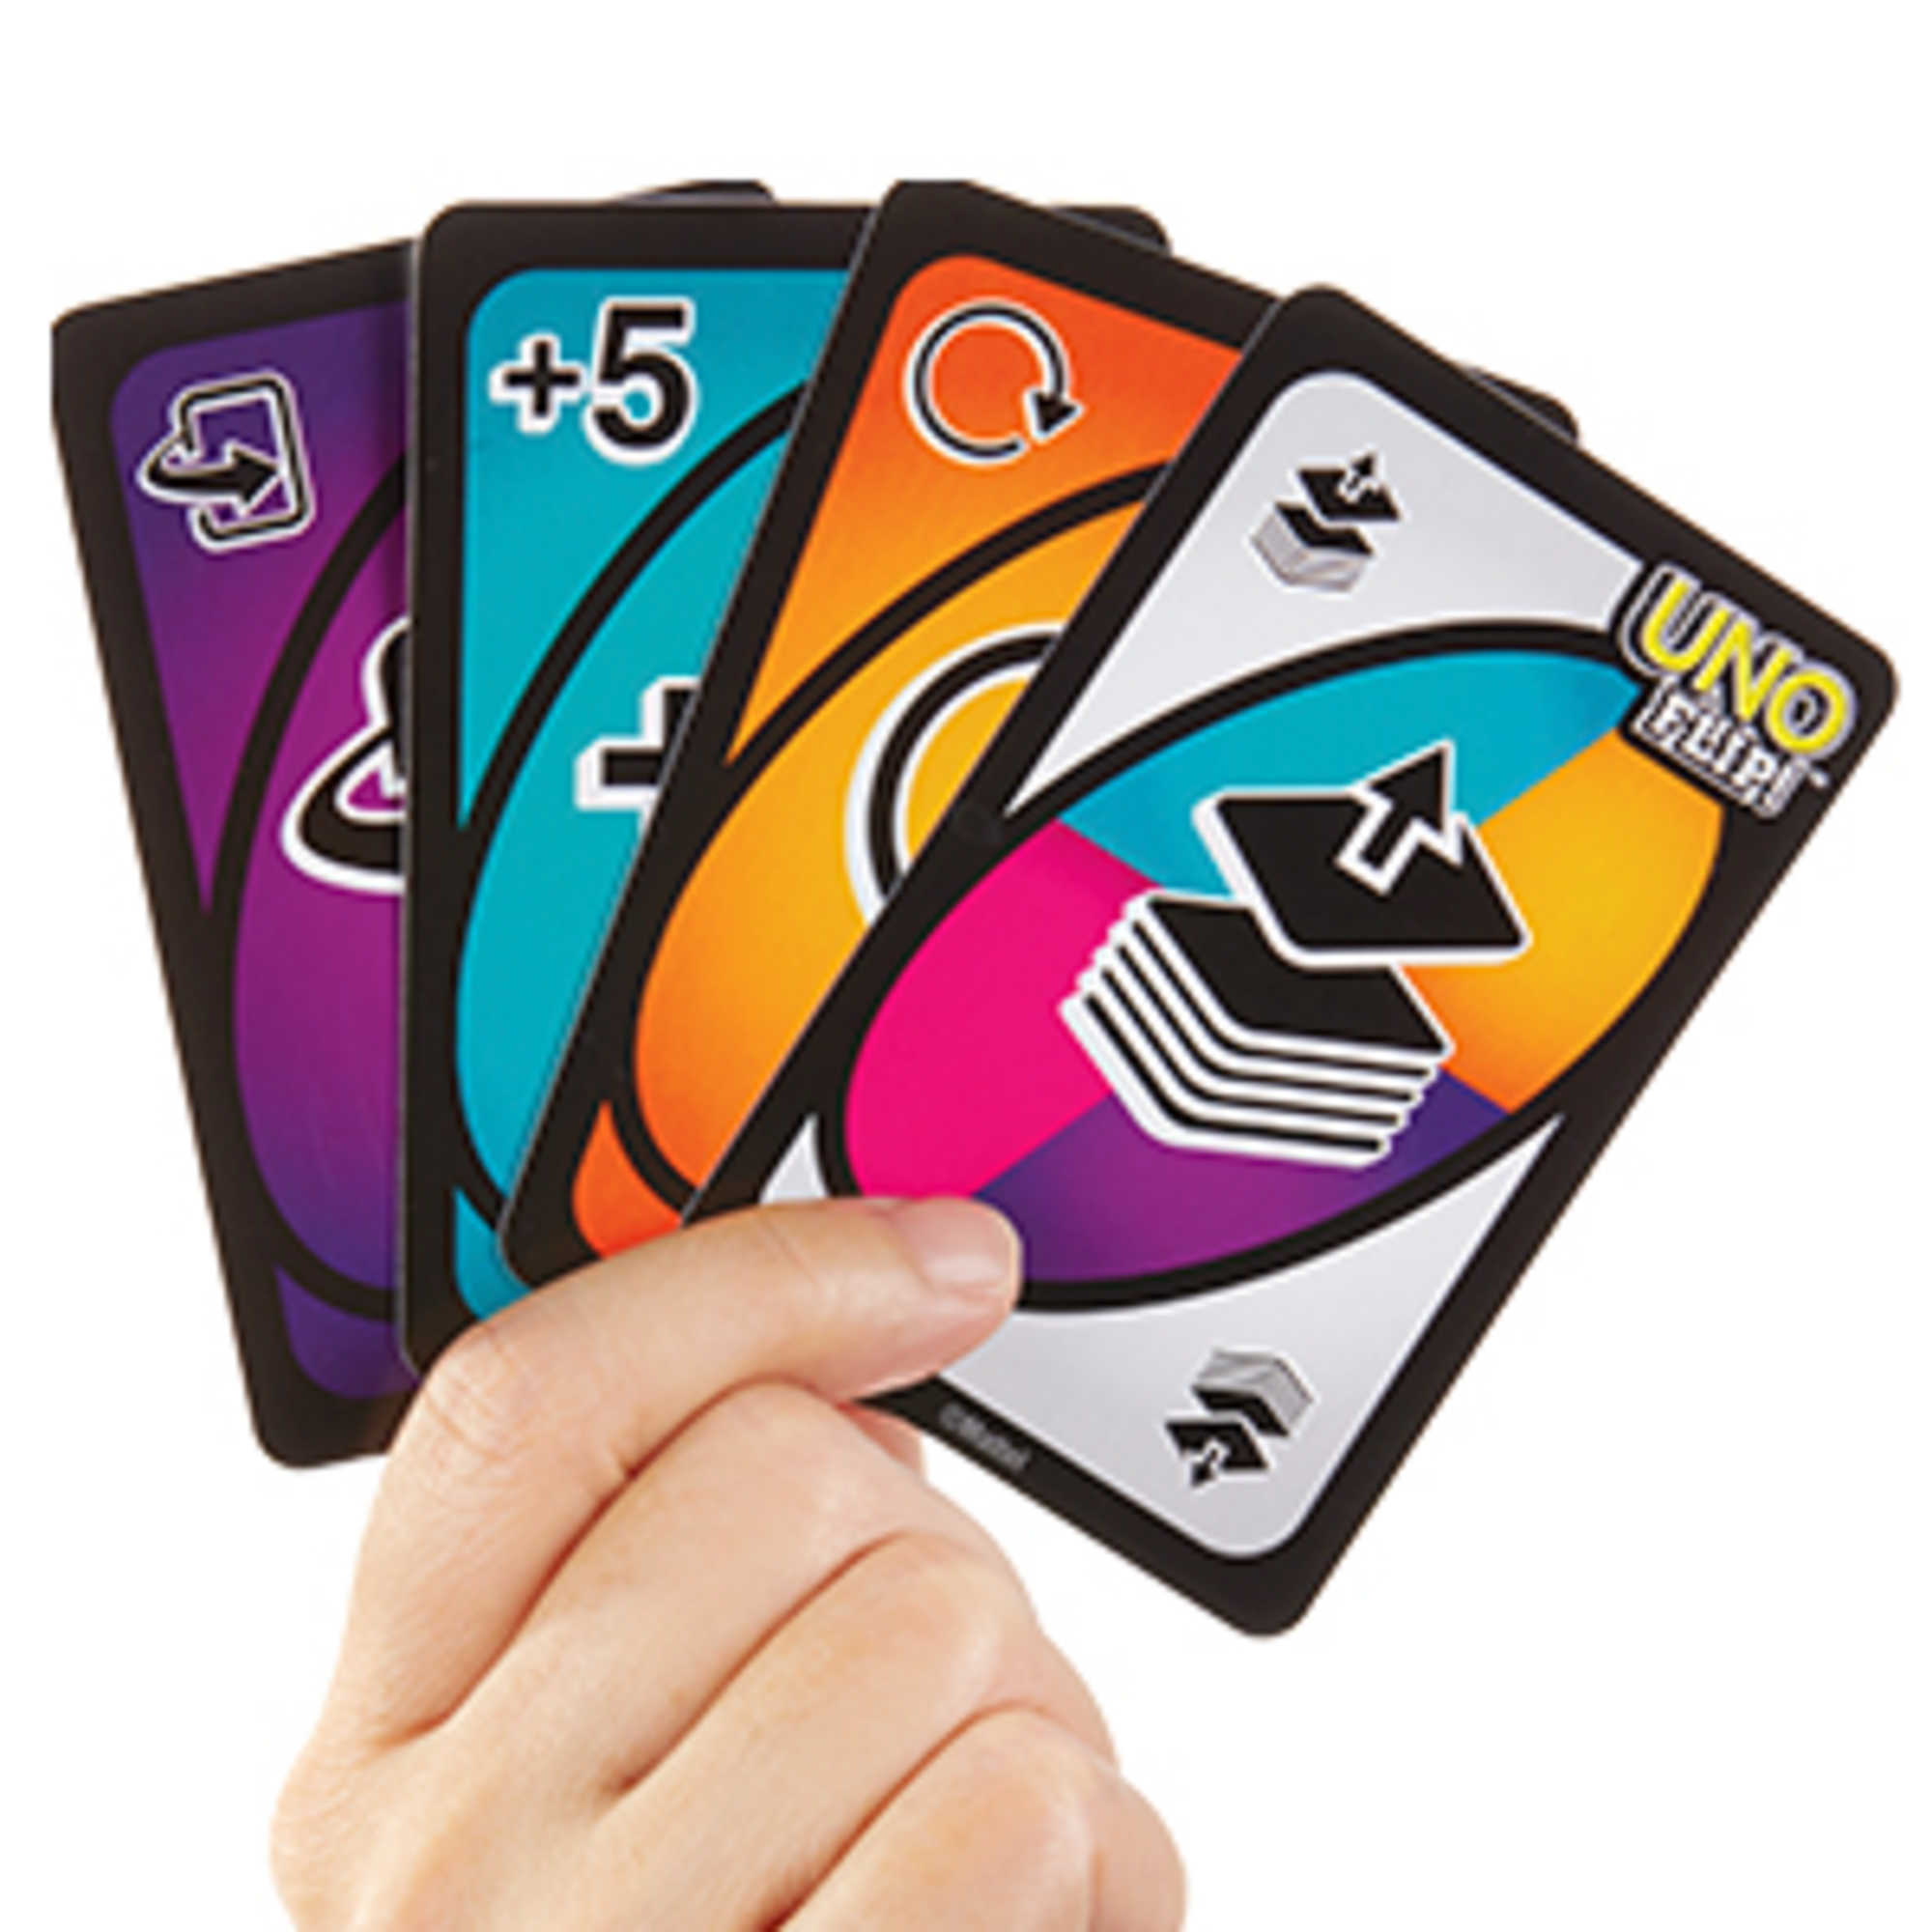 Mini UNO Kartenspiel - Jetzt kaufen und spielen! Ab 7 Jahren